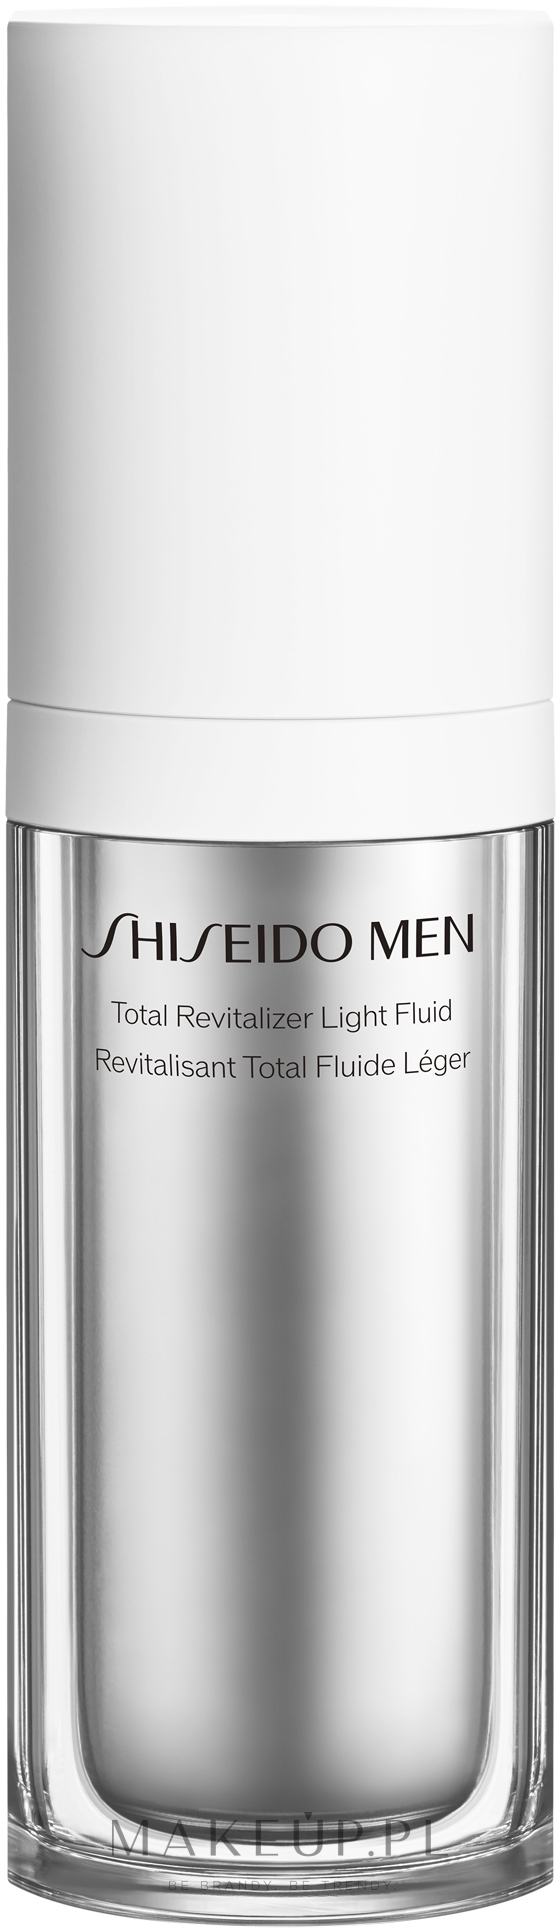 Odmładzający fluid do twarzy - Shiseido Men Total Revitalizer Light Fluid — Zdjęcie 70 ml